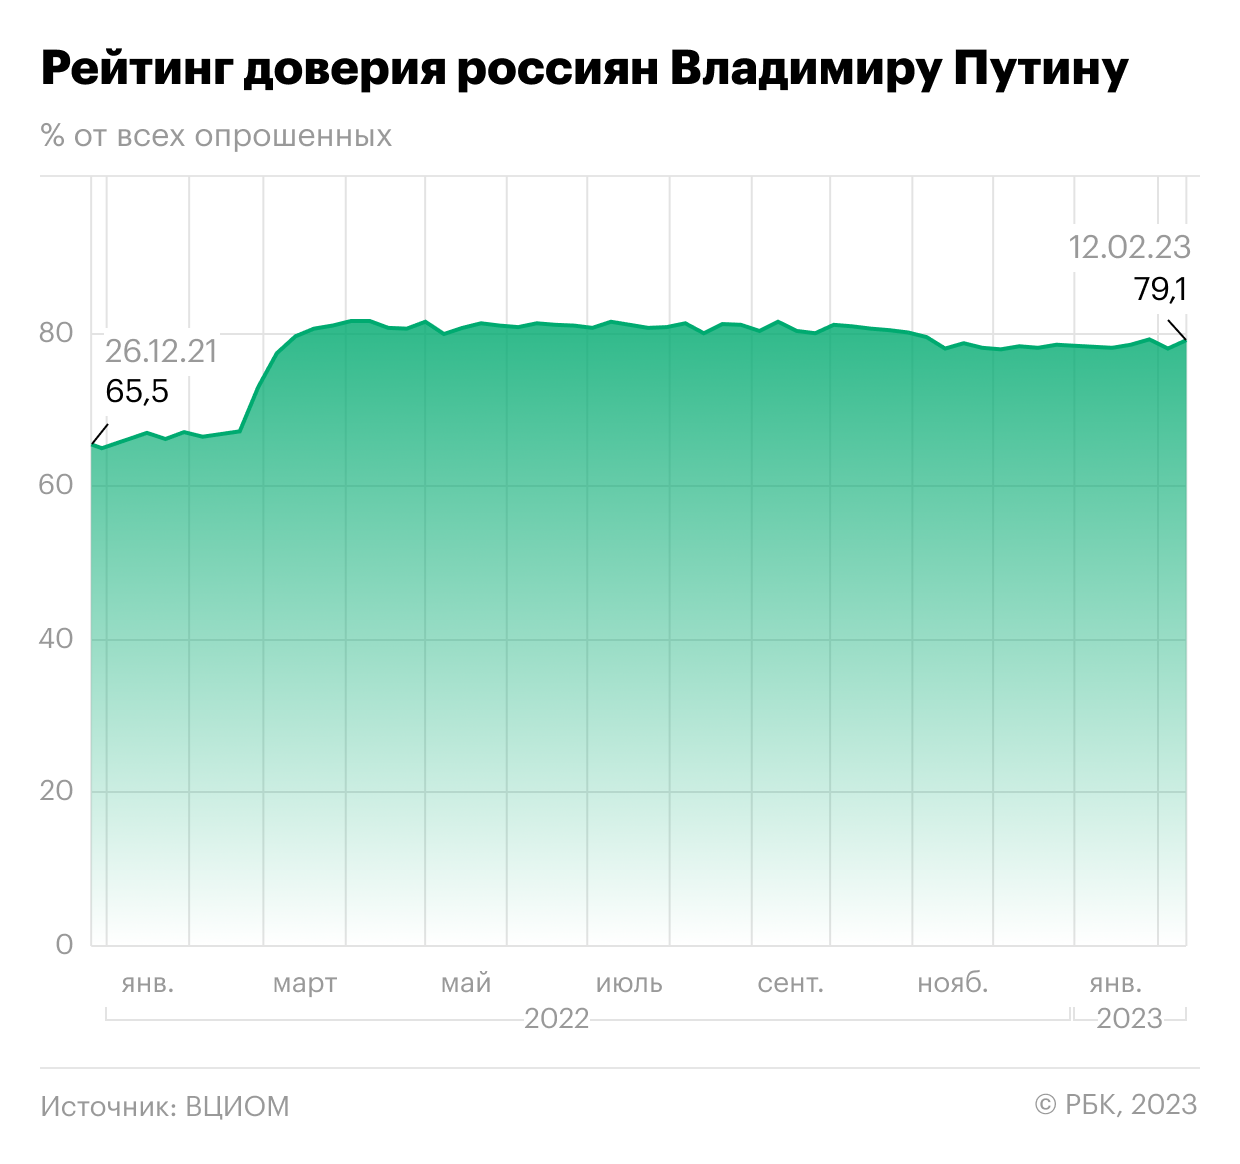 Индикаторы цифровой экономики за 2022 год. Рейтинг Путина за 2023. Уровень рейтинг Путина.